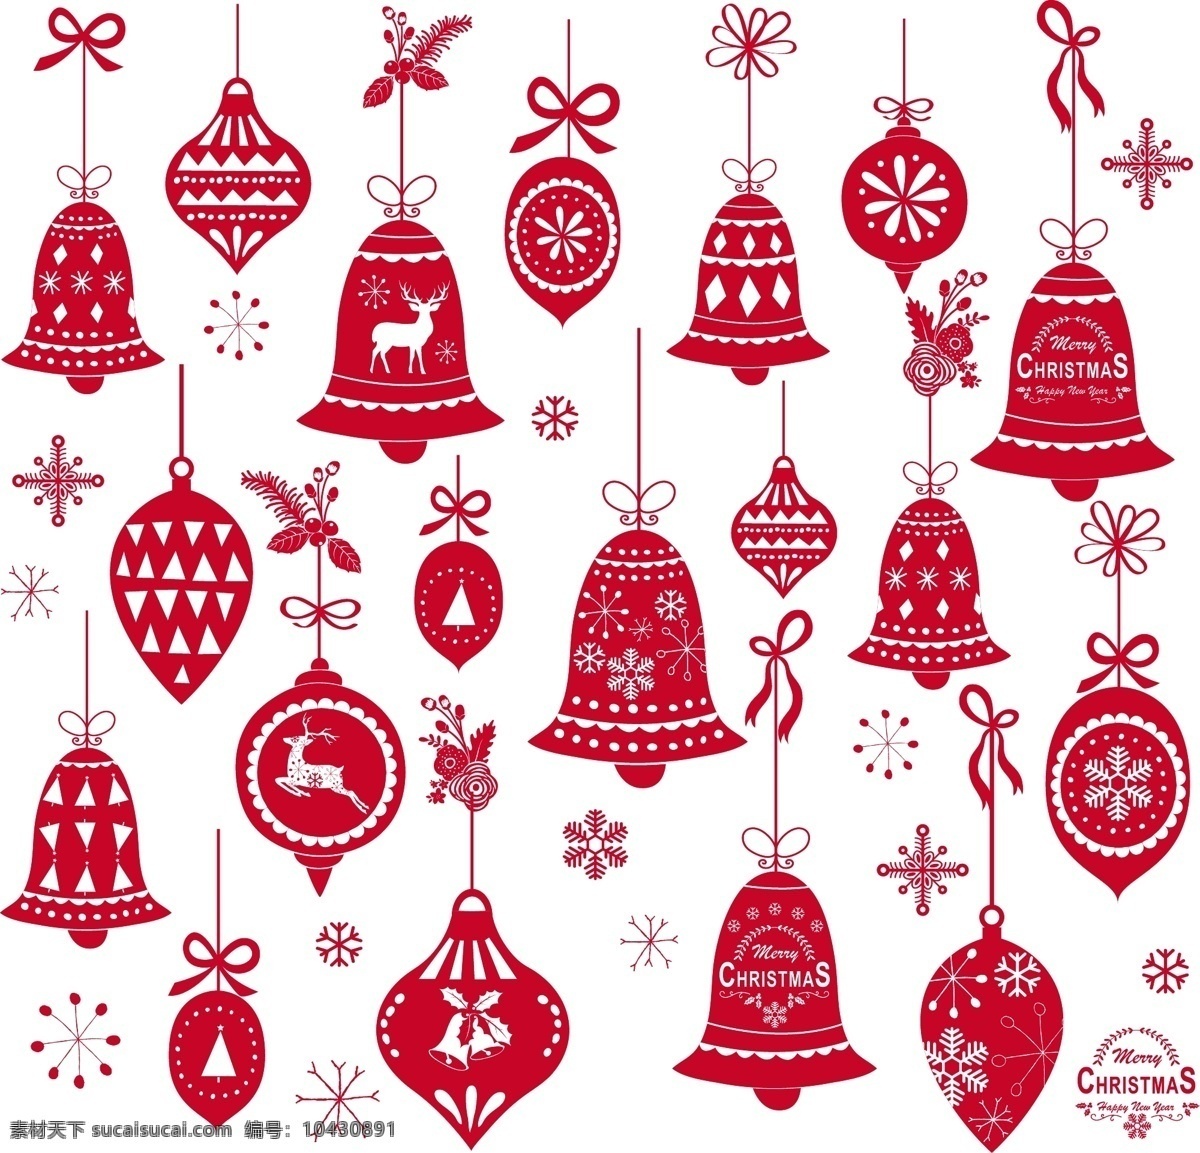 圣诞节 动漫 图案 圣诞元素 红色绸带 圣诞服装 雪人礼物 红色小汽车 电瓶车 杯子 麋鹿